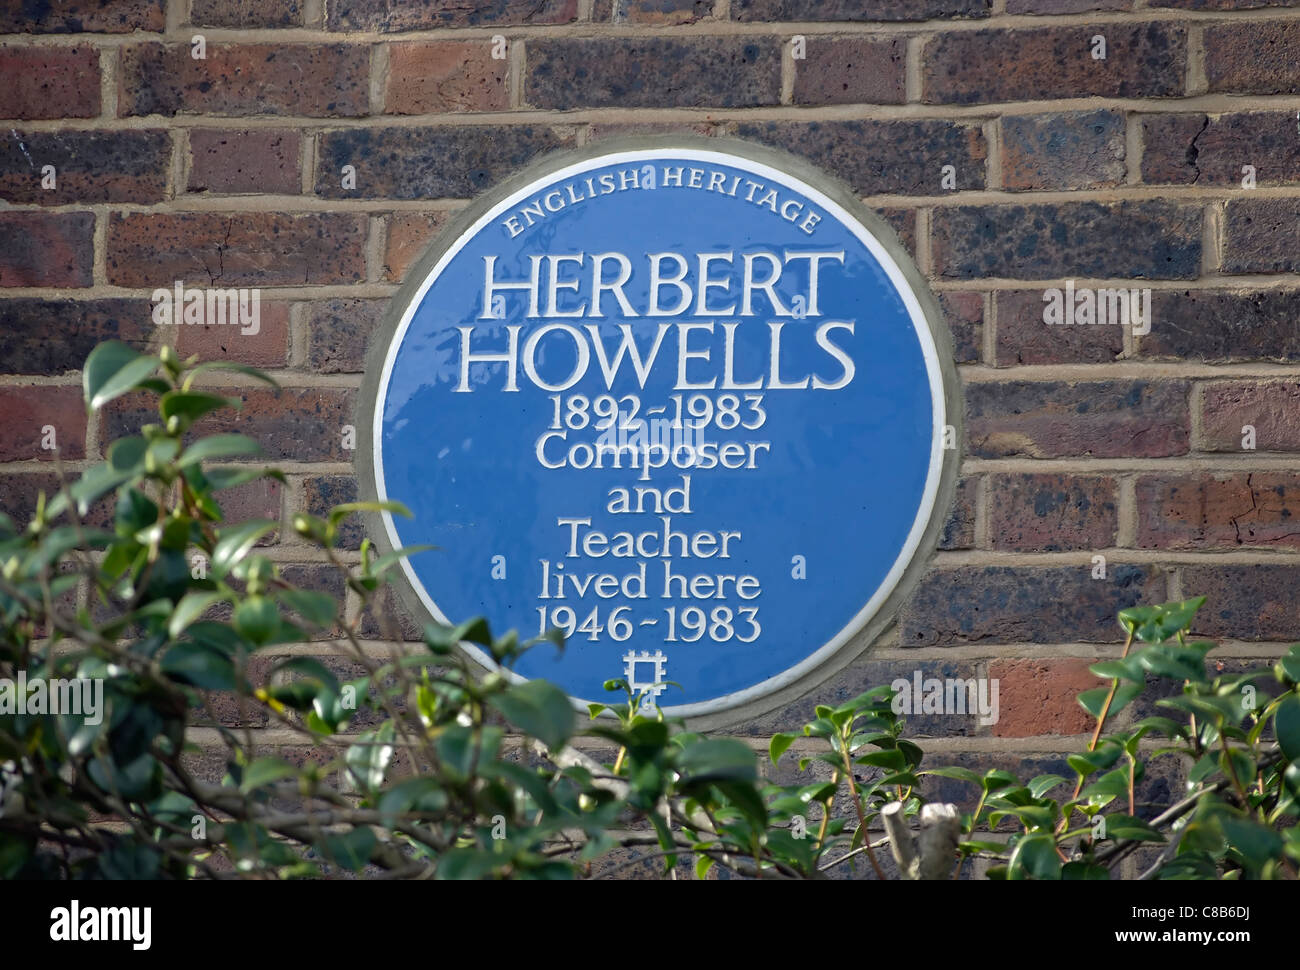 English Heritage targa blu segnando una casa del compositore e insegnante di Herbert howells, Barnes, a sud-ovest di Londra - Inghilterra Foto Stock